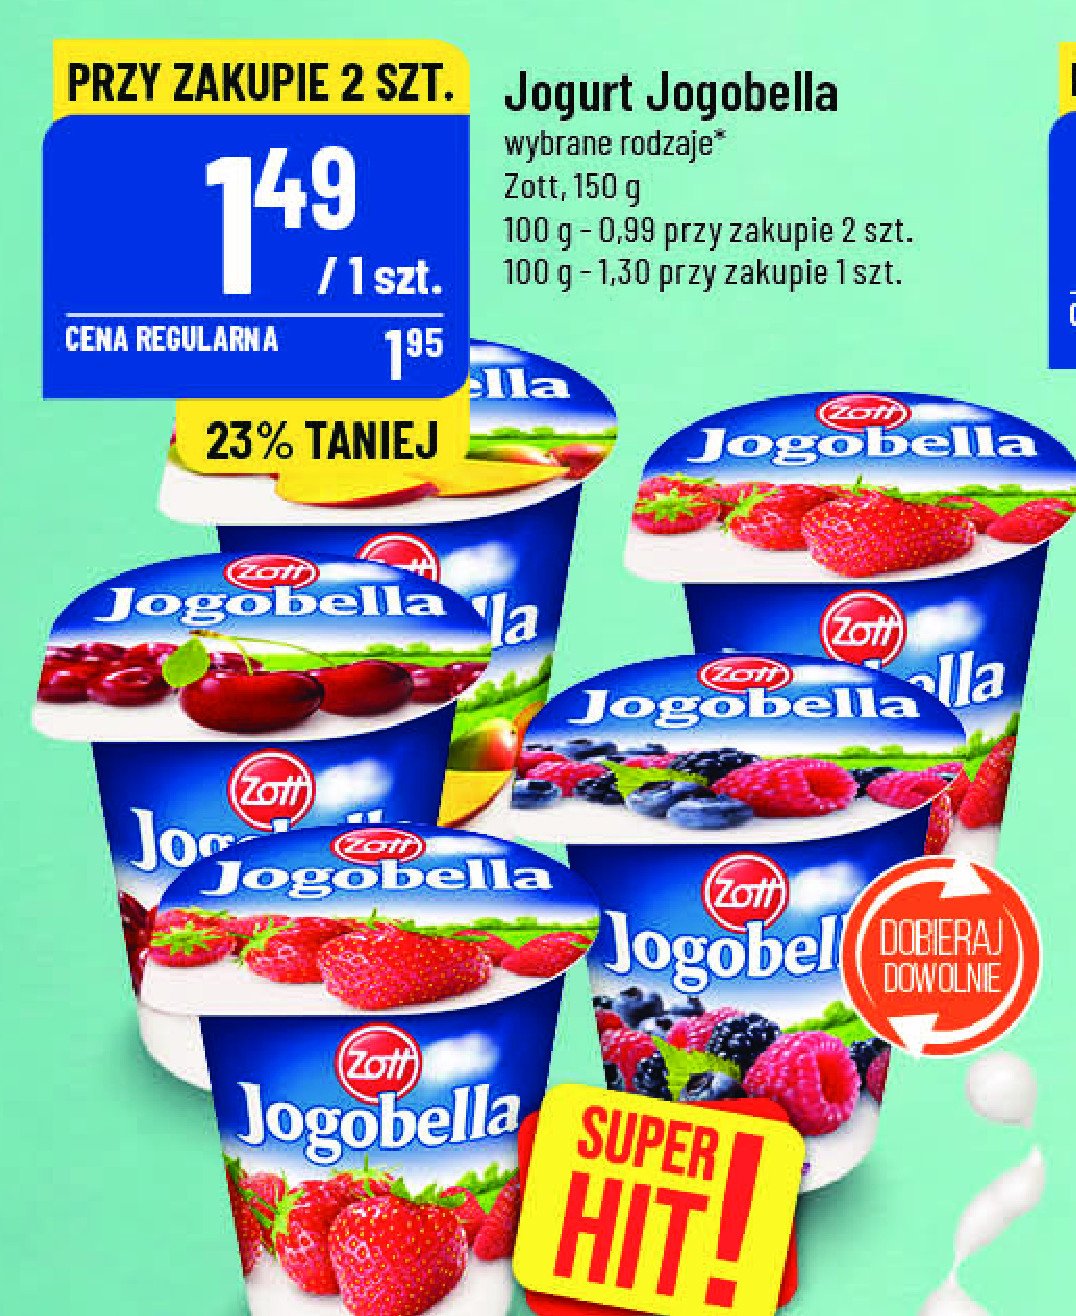 Jogurt truskawka-poziomka Zott jogobella promocja